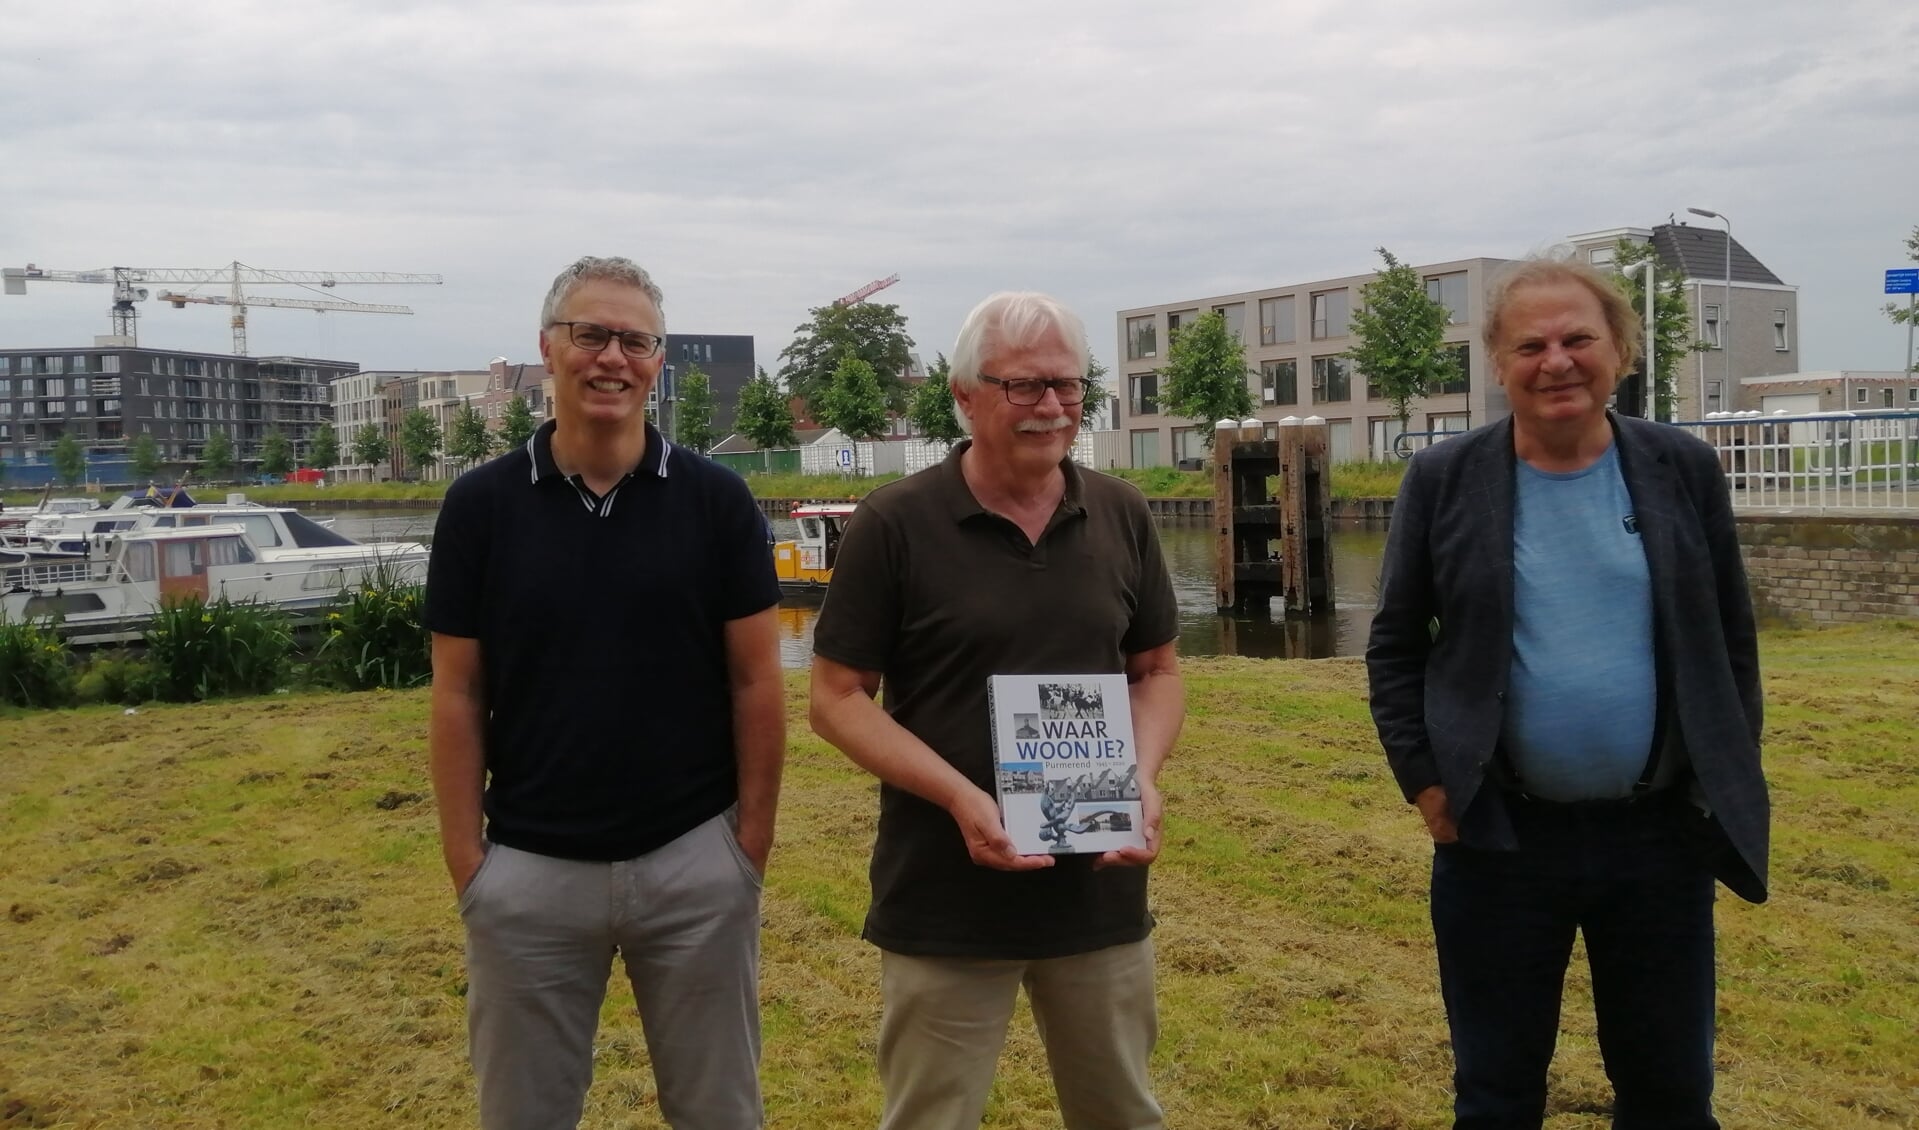 Wouter van Waardt presenteert met trots het jubileumboek, geflankeerd door co-auteurs Yoeri van den Busken (links) en Peter Smit. Op de achtergrond bouwt en groeit Purmerend gewoon door.